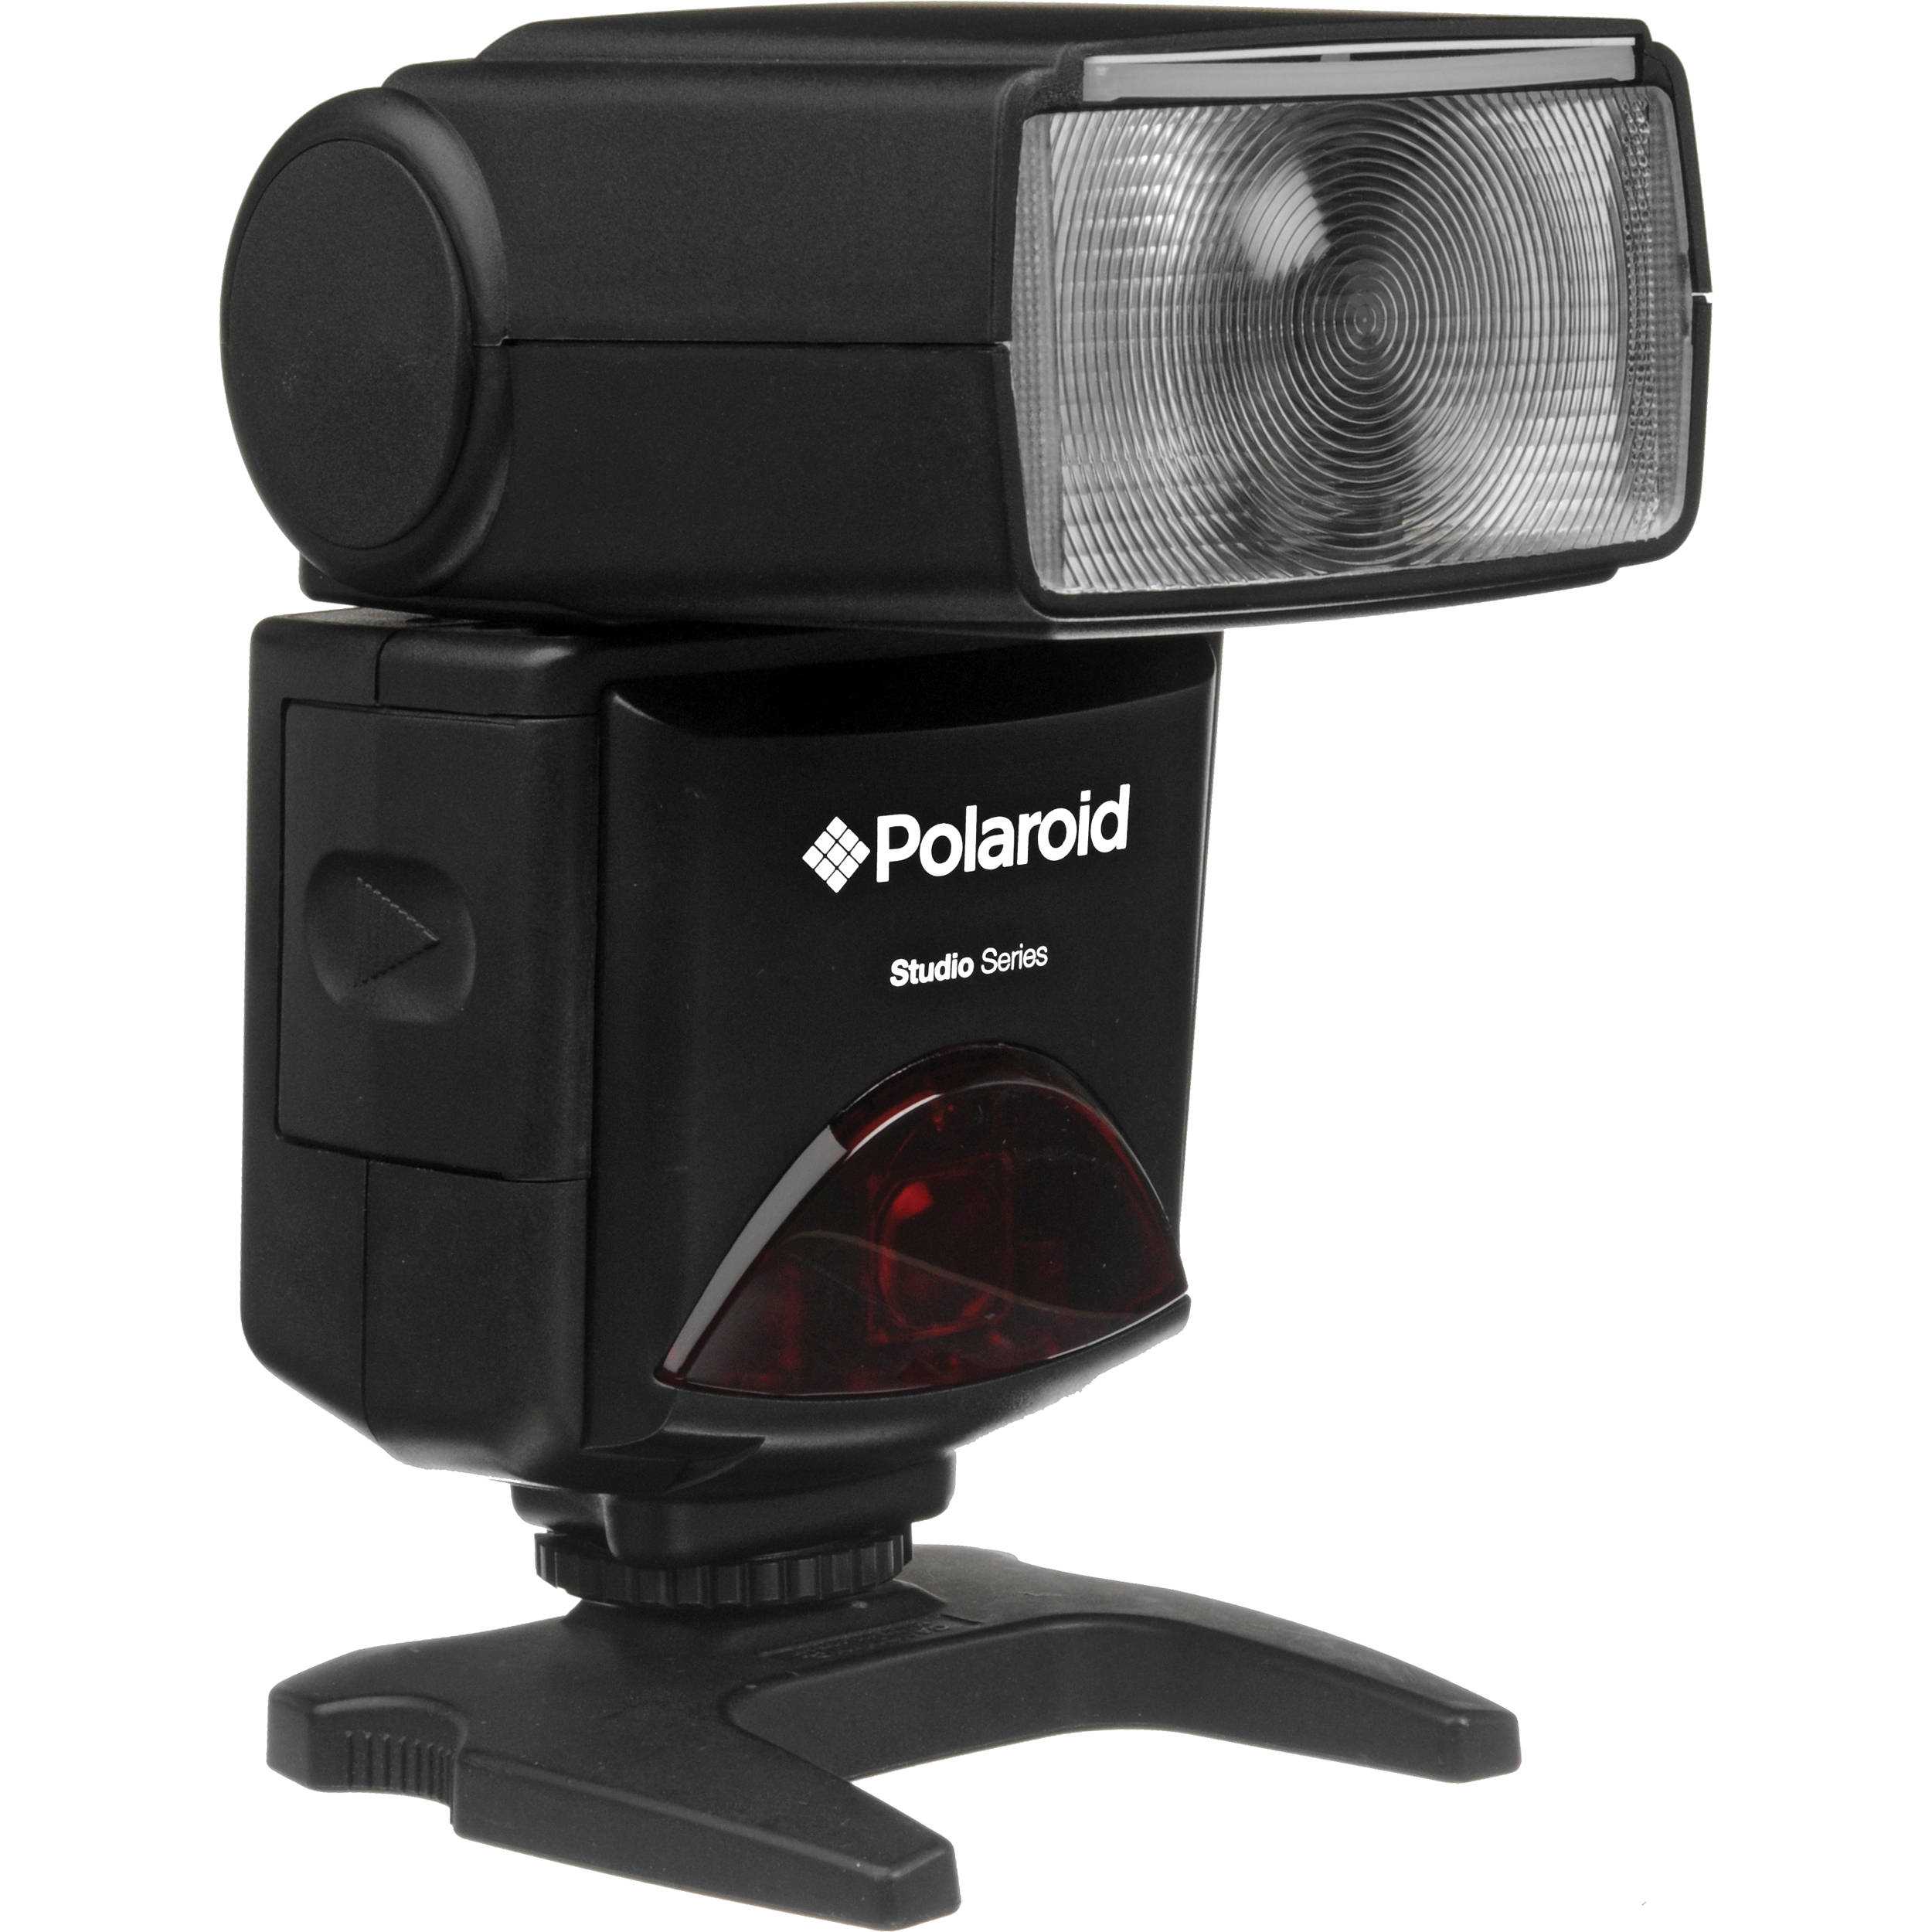 Фотовспышка Polaroid PL108-AF for Nikon - подробные характеристики обзоры видео фото Цены в интернет-магазинах где можно купить фотовспышку Polaroid PL108-AF for Nikon